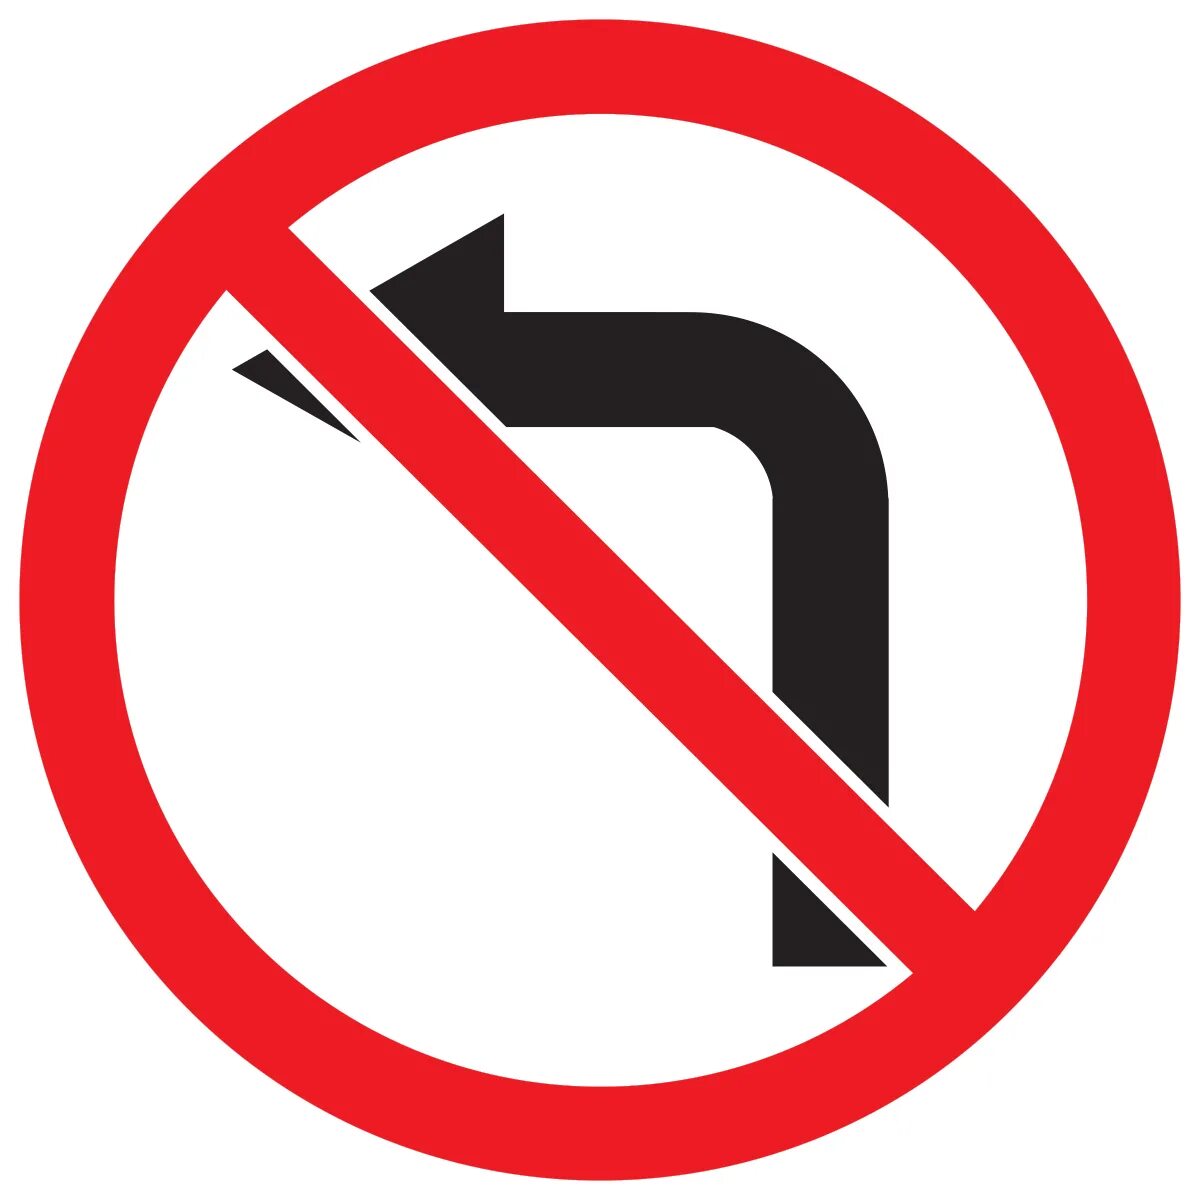 Знак 3.18.2. Дорожный знак 3.18.2 поворот налево запрещен. Знак 3.18.2 поворот направо запрещен. Знак 3.18.2 поворот налево запрещен запрещает поворот налево.